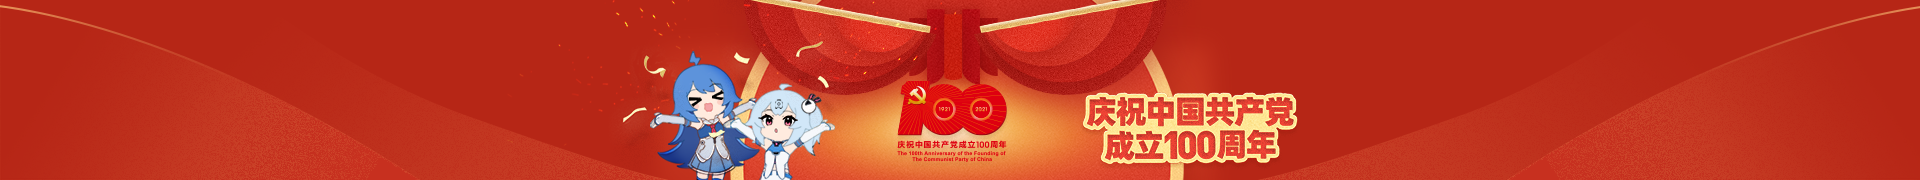 祝贺中国共产党100周年生日快乐！插图